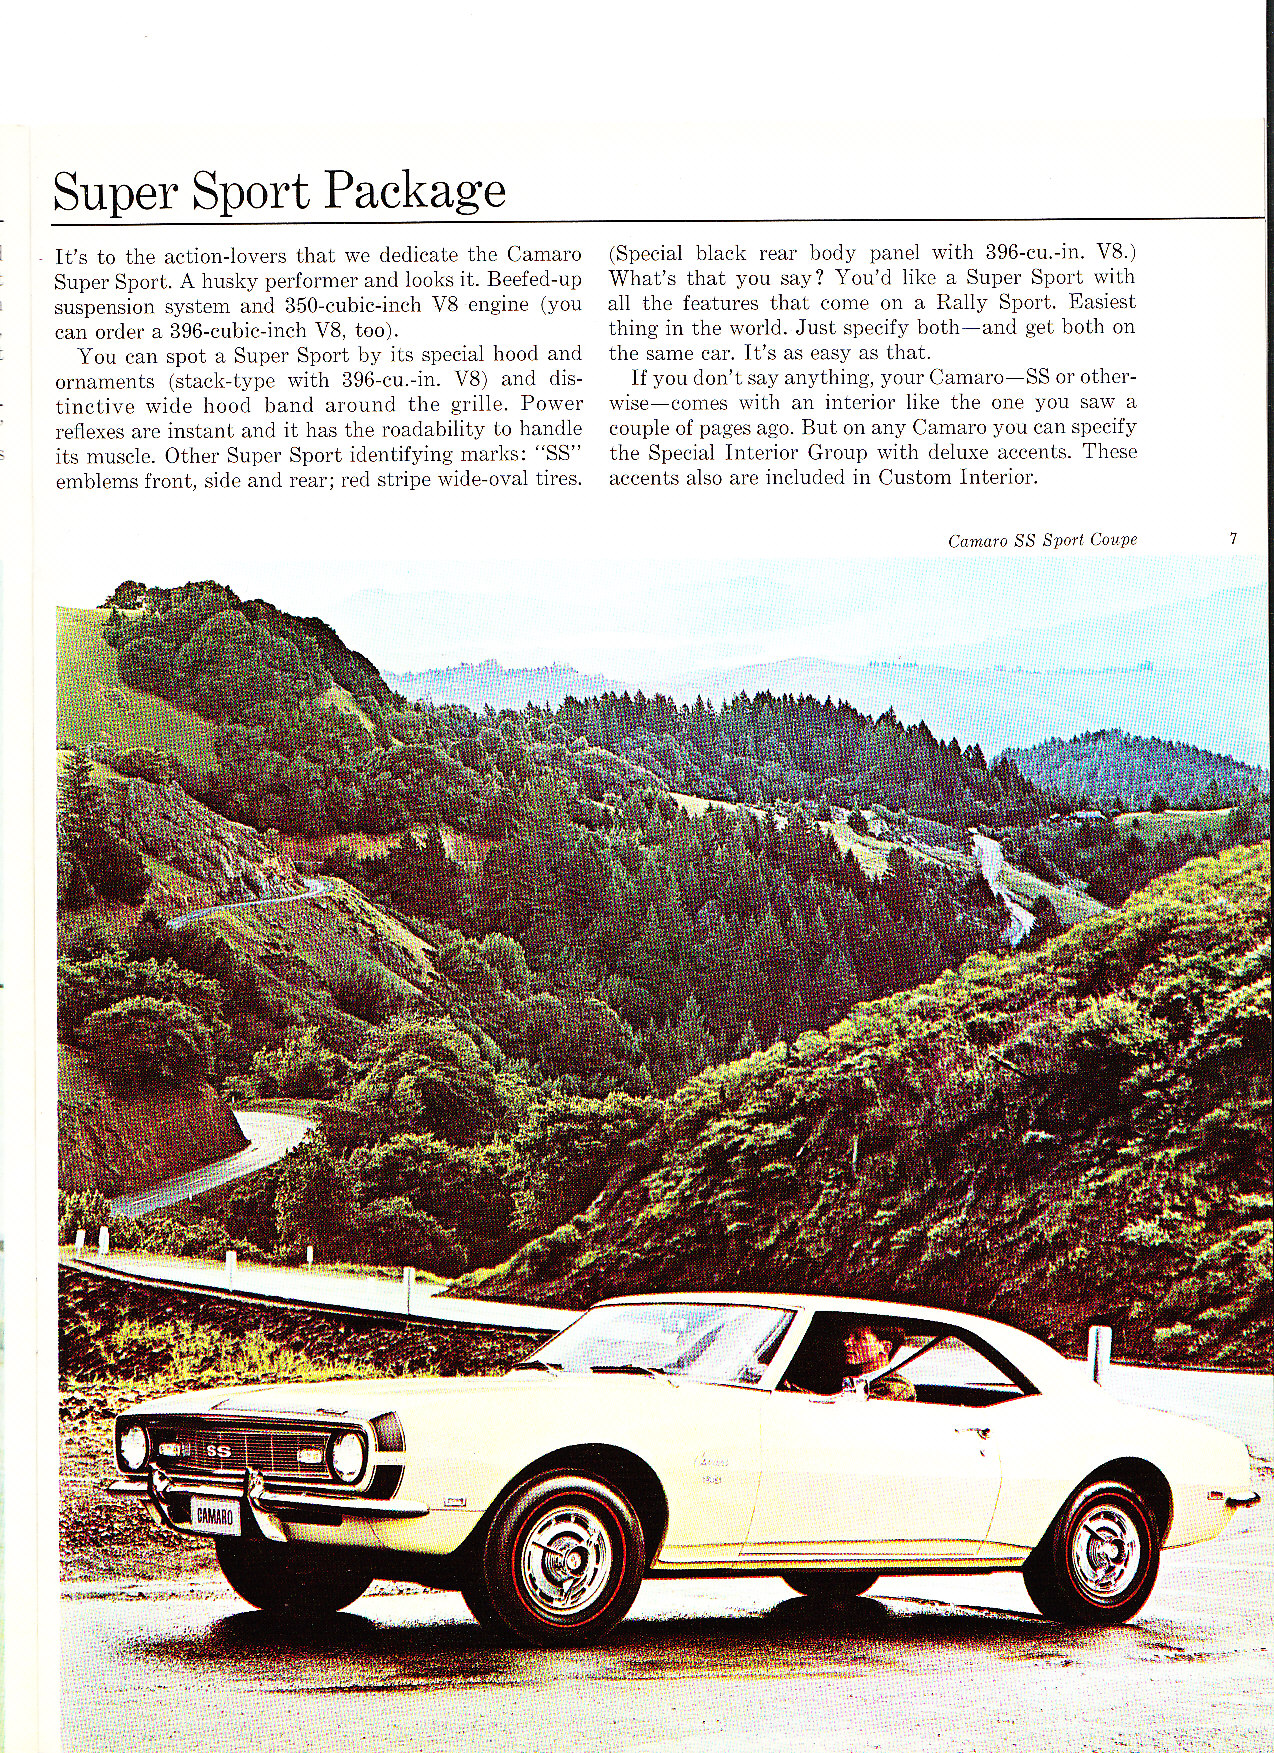 1968 Chev Camaro Brochure Page 14